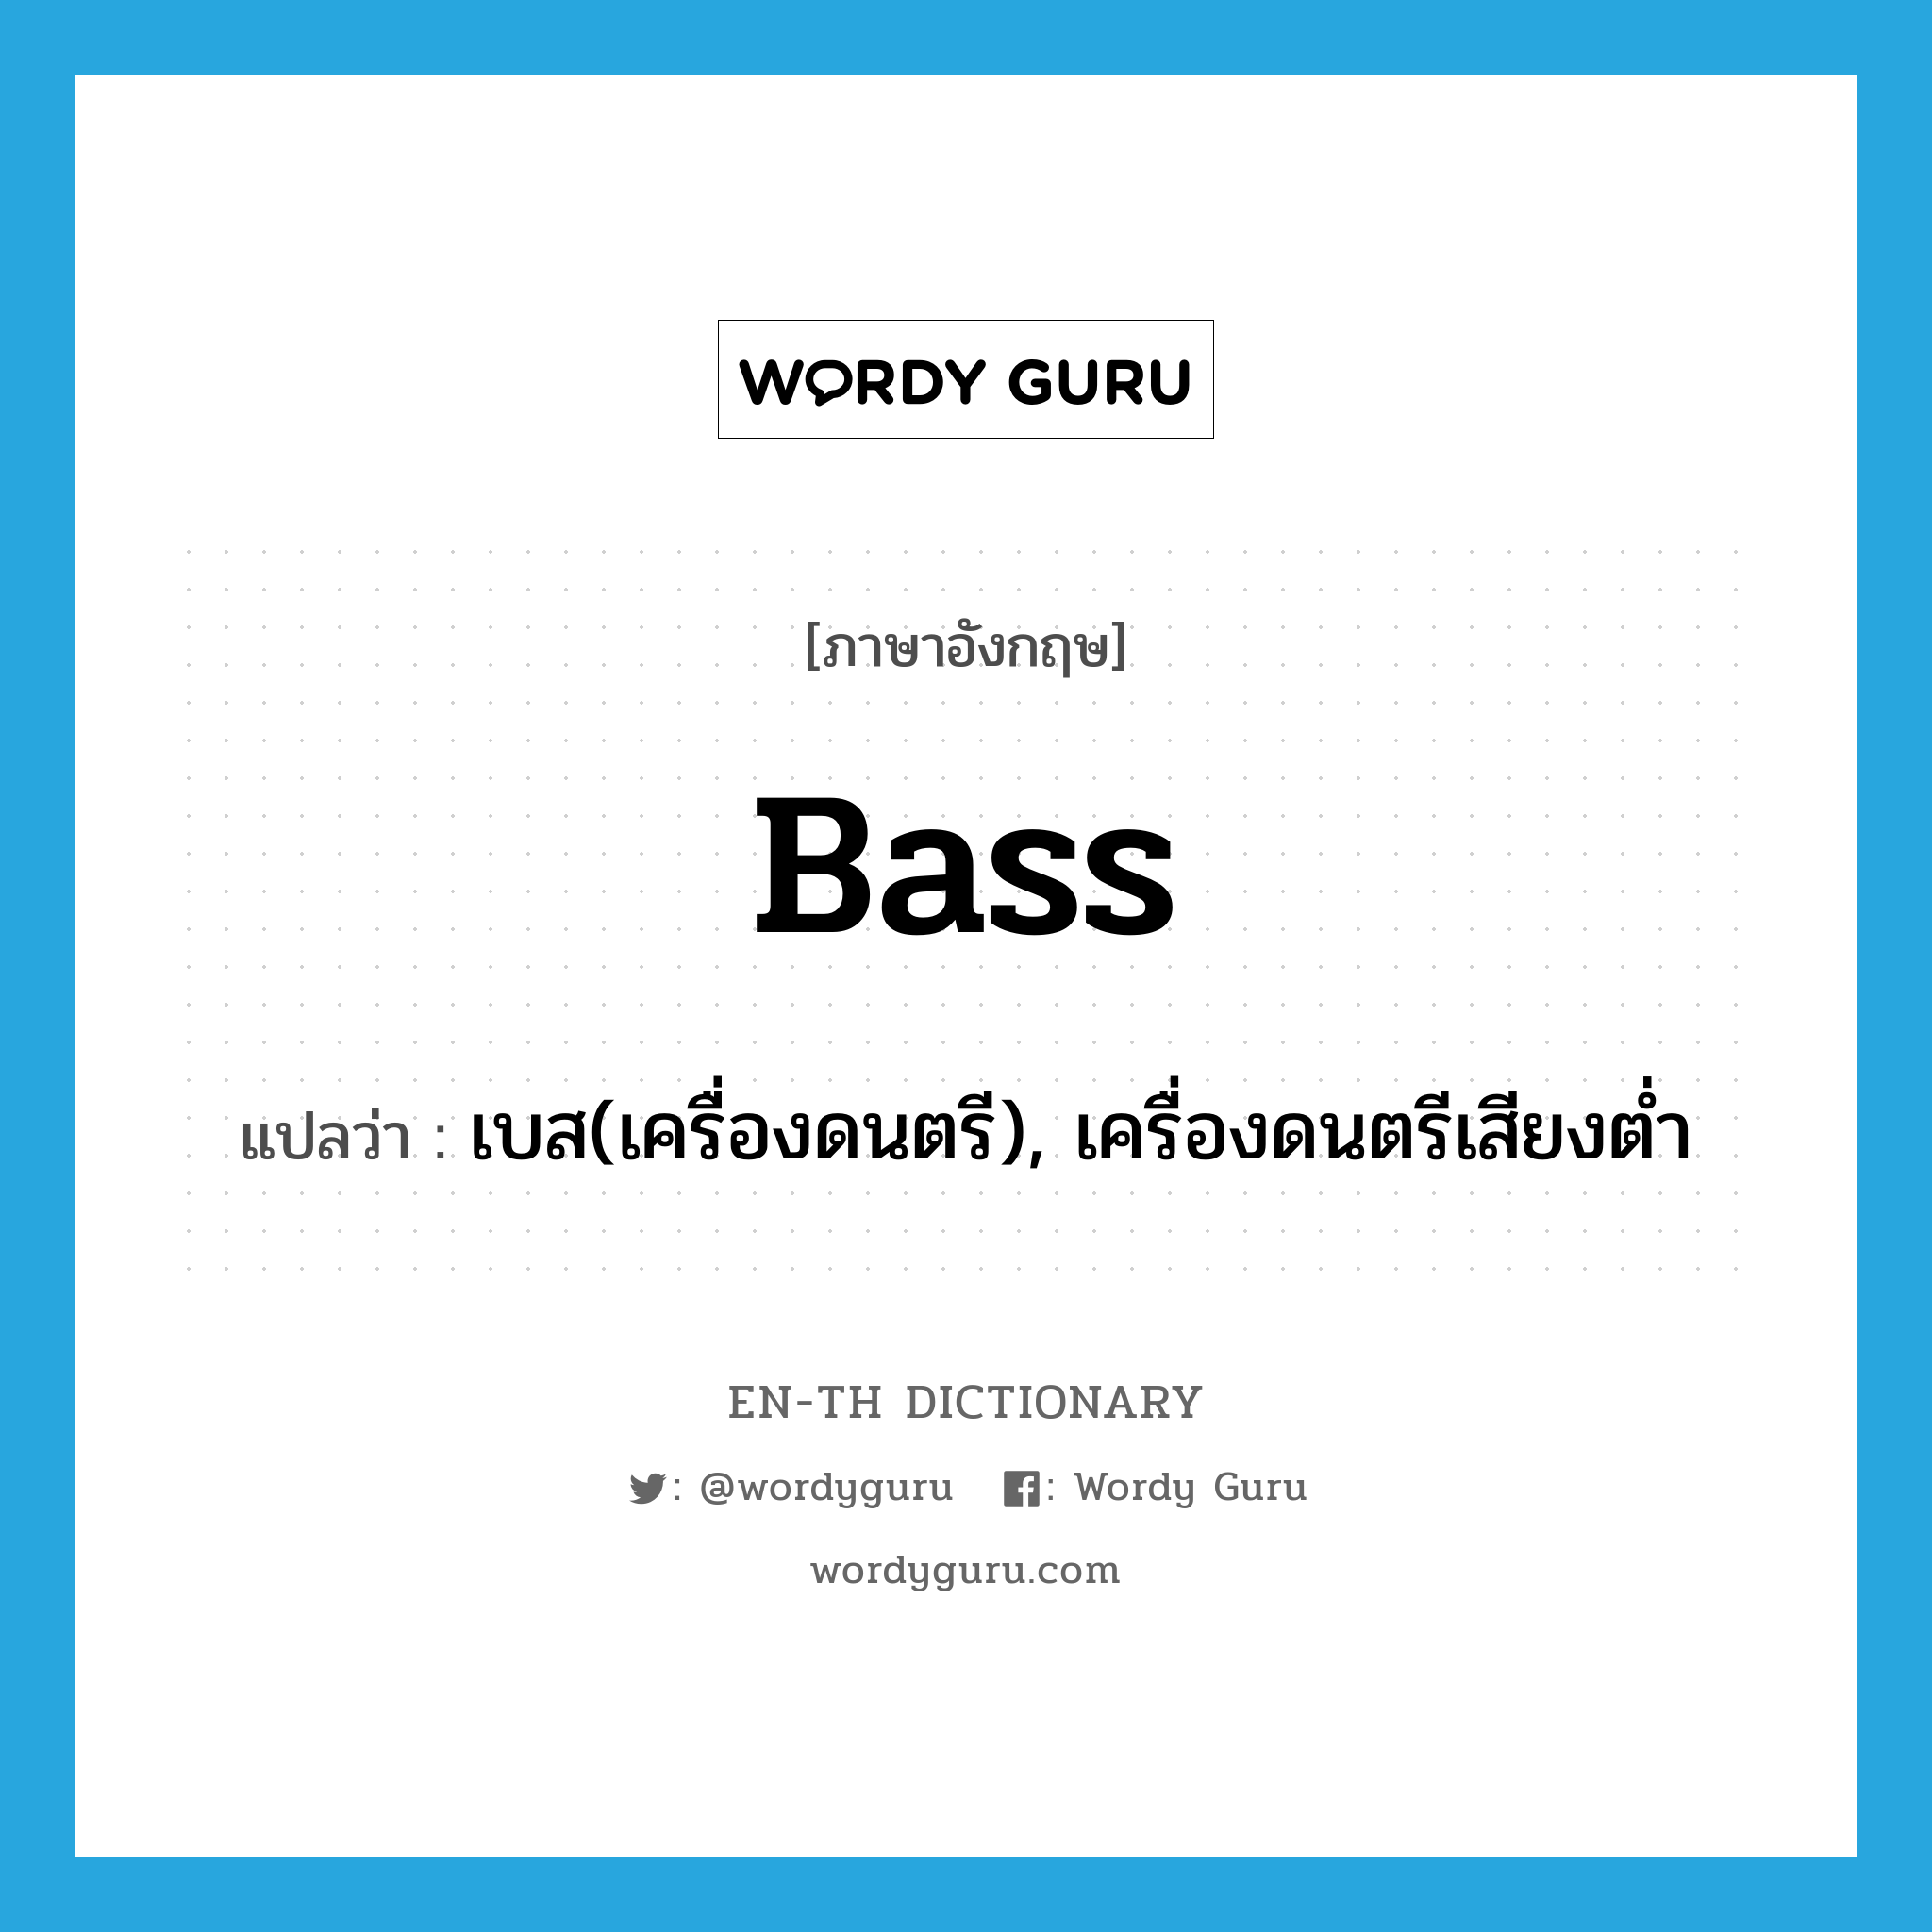 เบส(เครื่องดนตรี), เครื่องดนตรีเสียงต่ำ ภาษาอังกฤษ?, คำศัพท์ภาษาอังกฤษ เบส(เครื่องดนตรี), เครื่องดนตรีเสียงต่ำ แปลว่า bass ประเภท N หมวด N